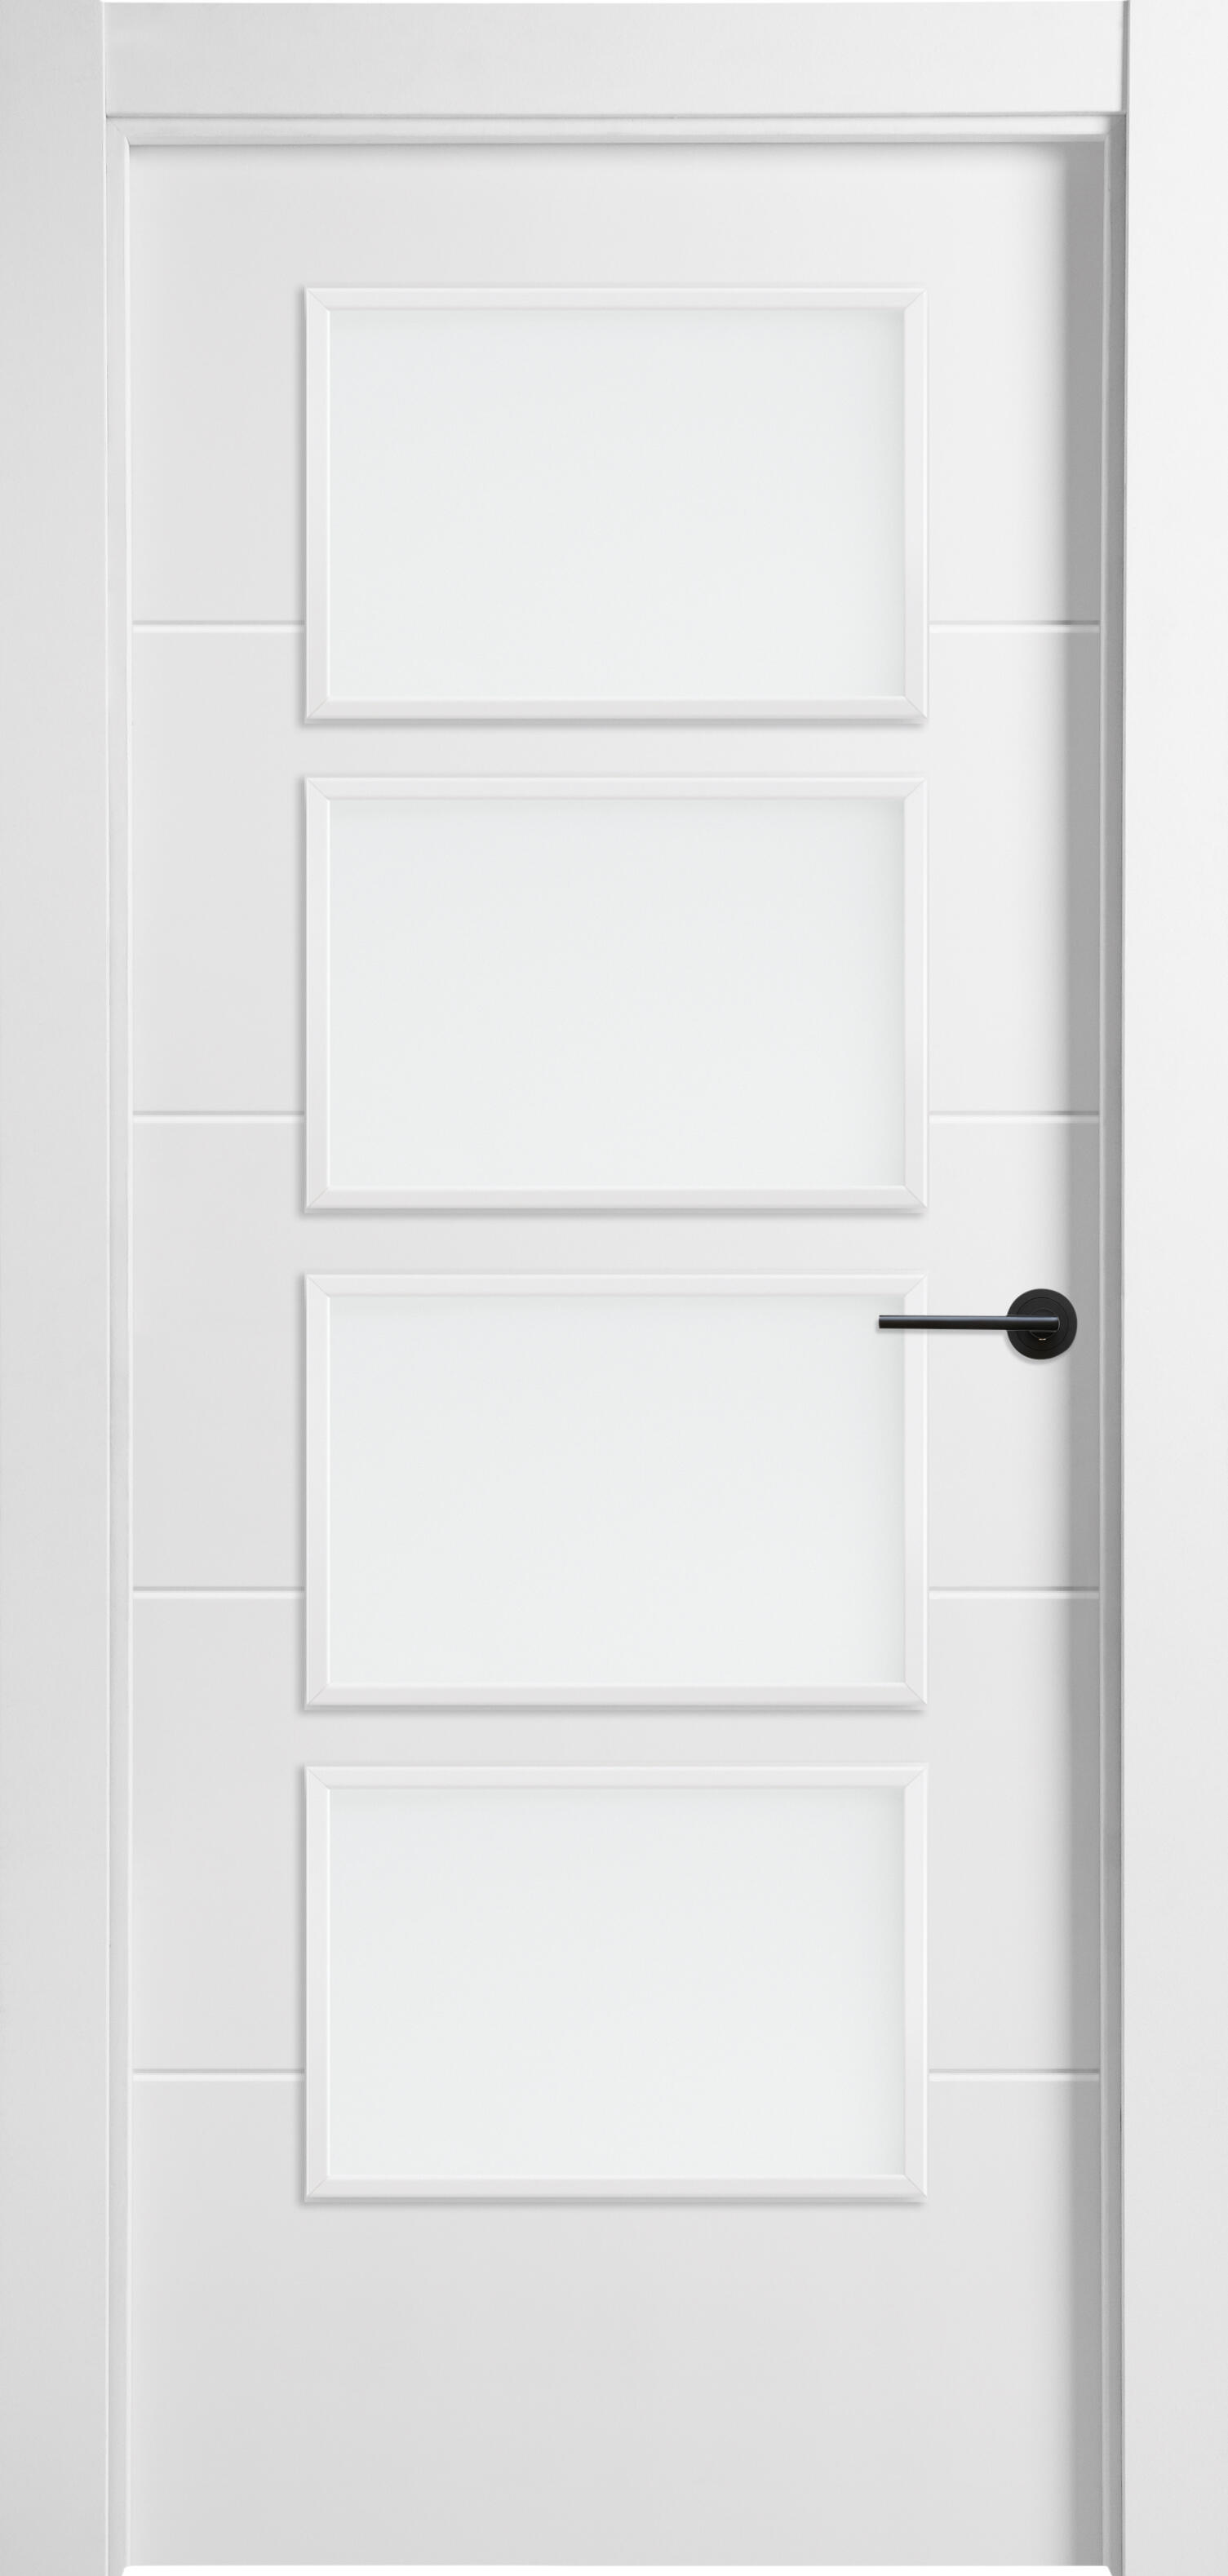 Puerta lucerna plus black blanco de apertura izquierda con cristal de 82.5 cm